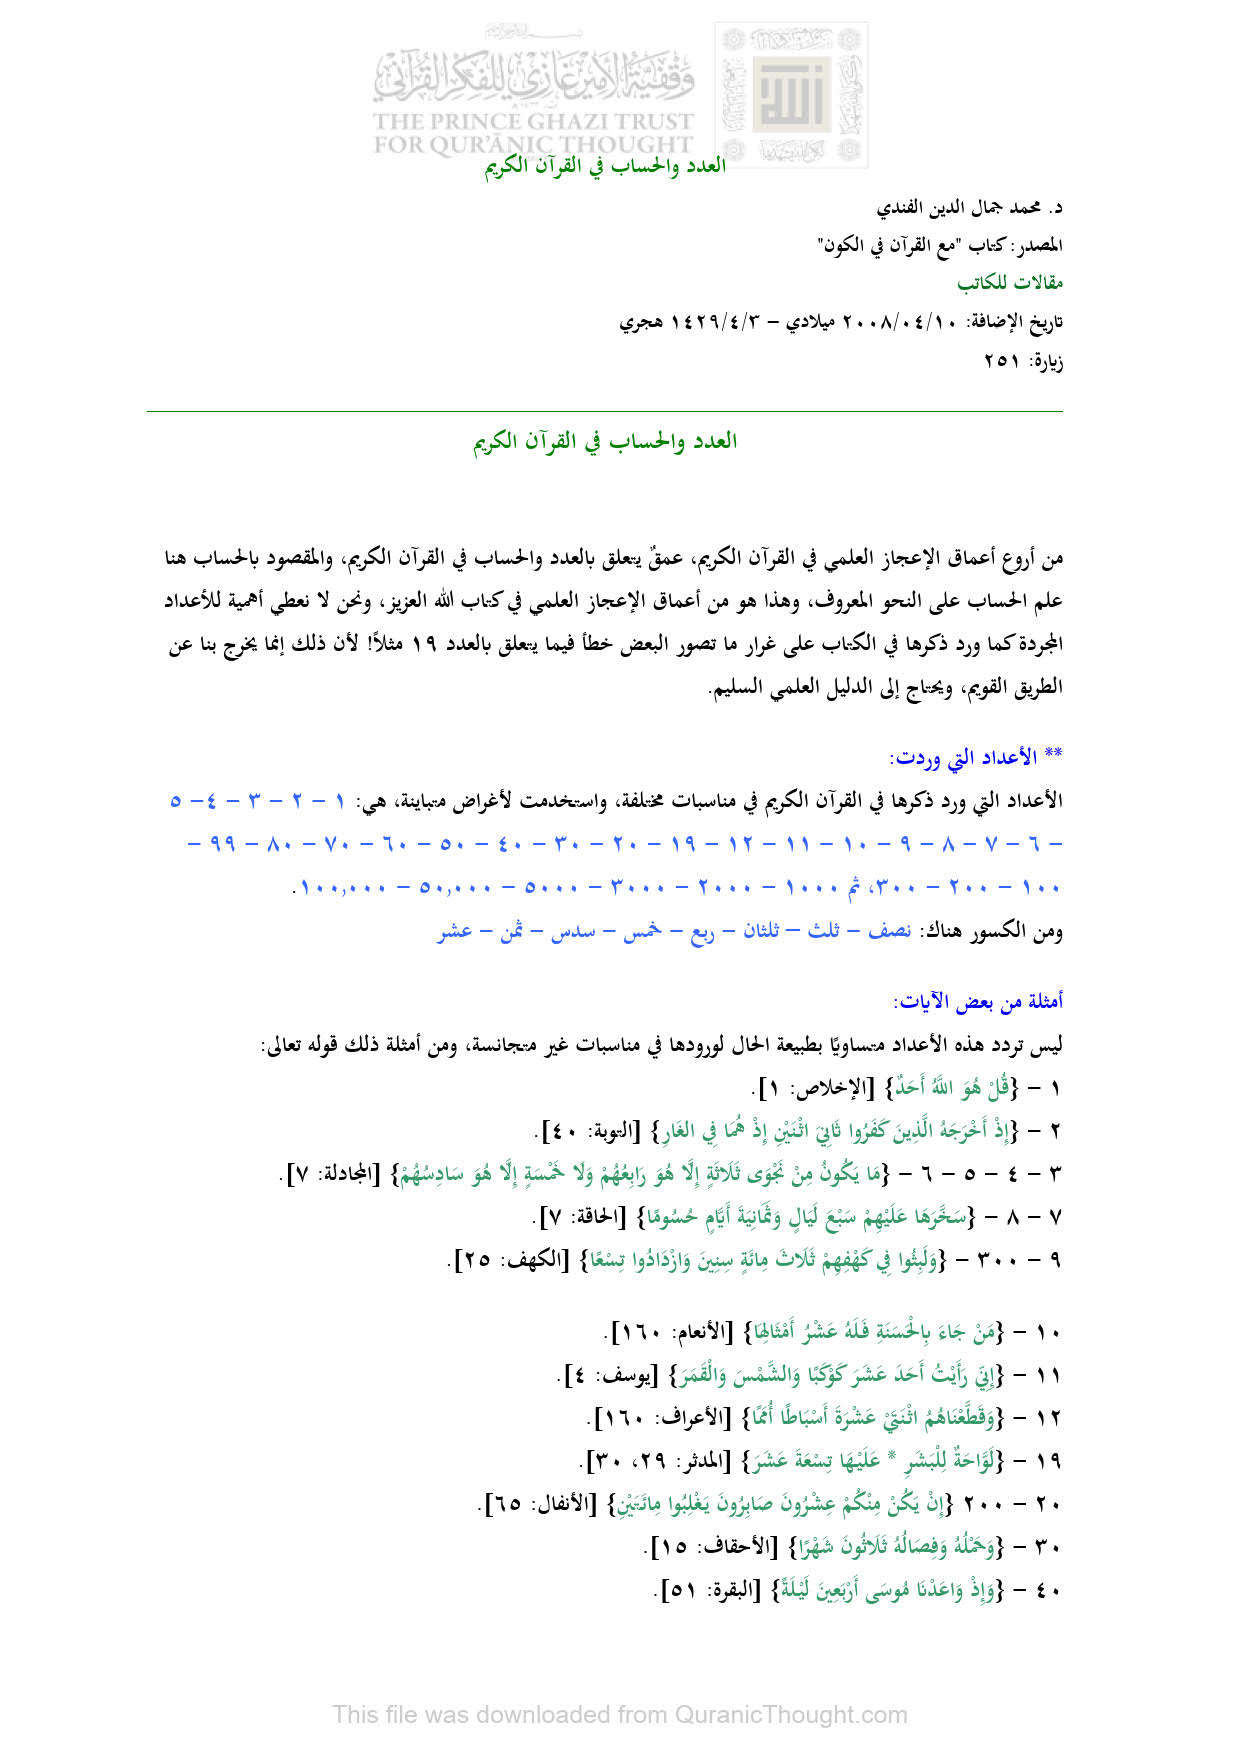 العدد والحساب في القرآن الكريم _ مقالة